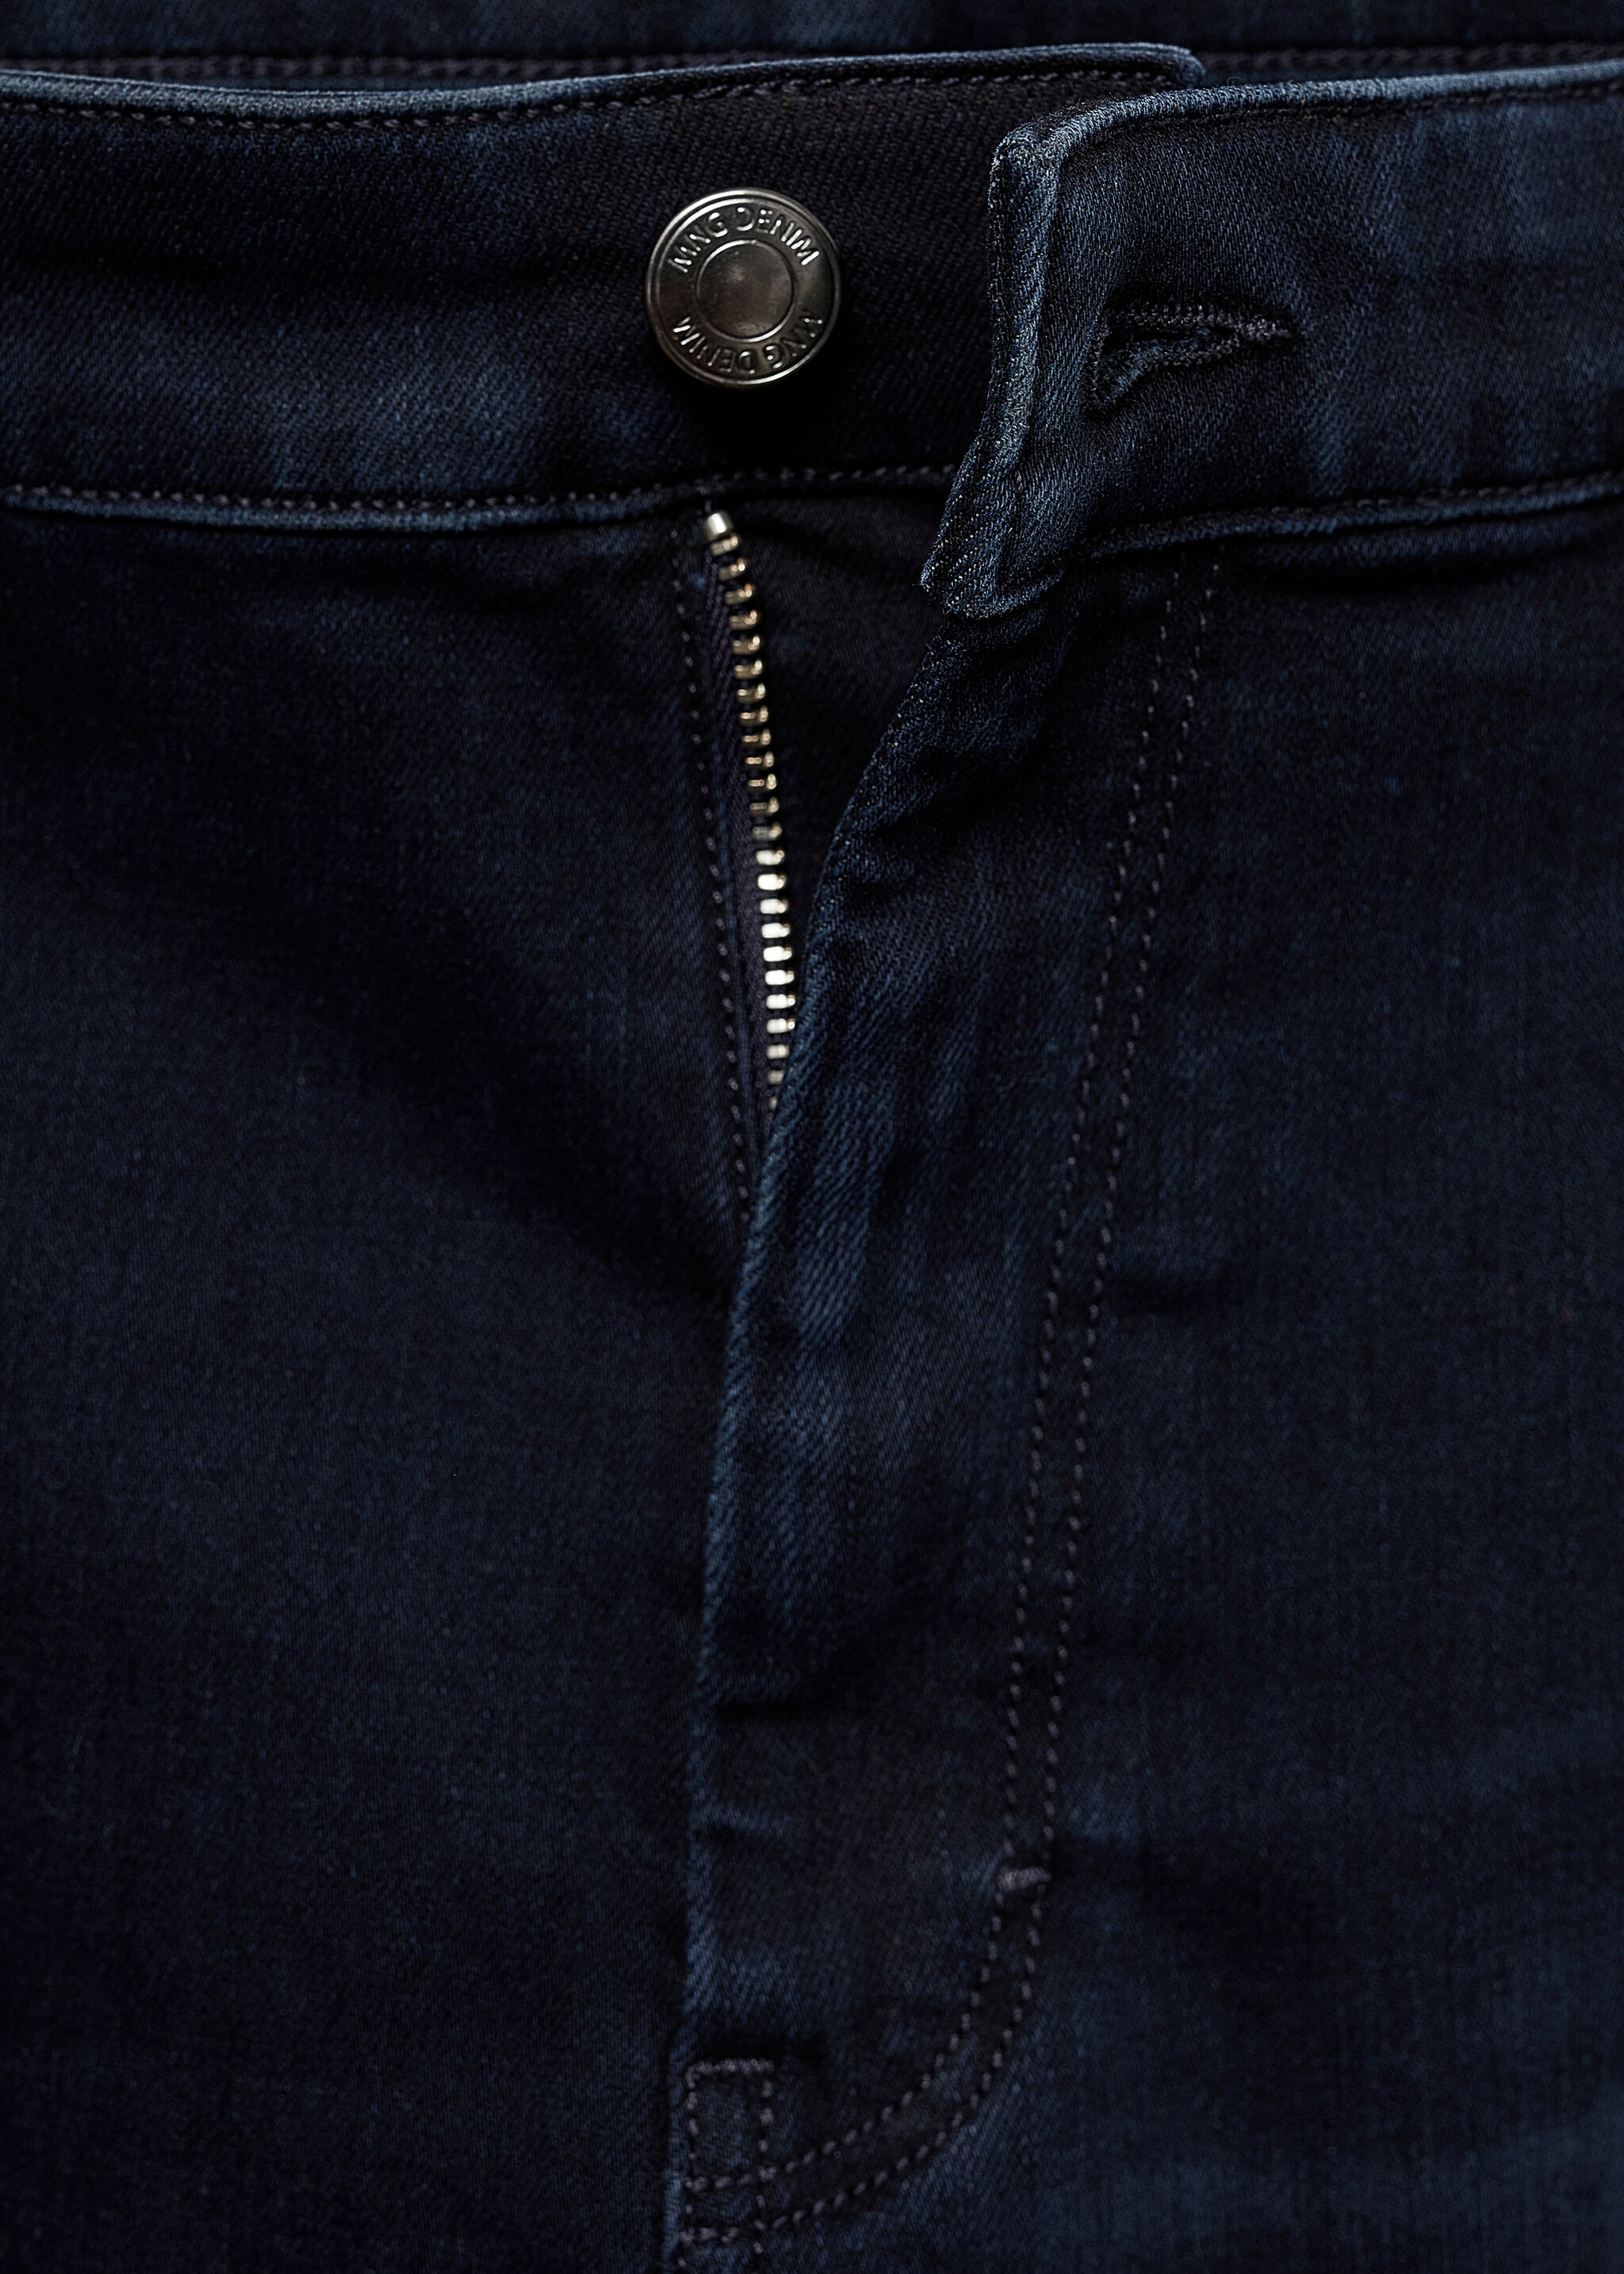 Jeans Patrick slim fit Ultra Soft Touch - Pormenor do artigo 8